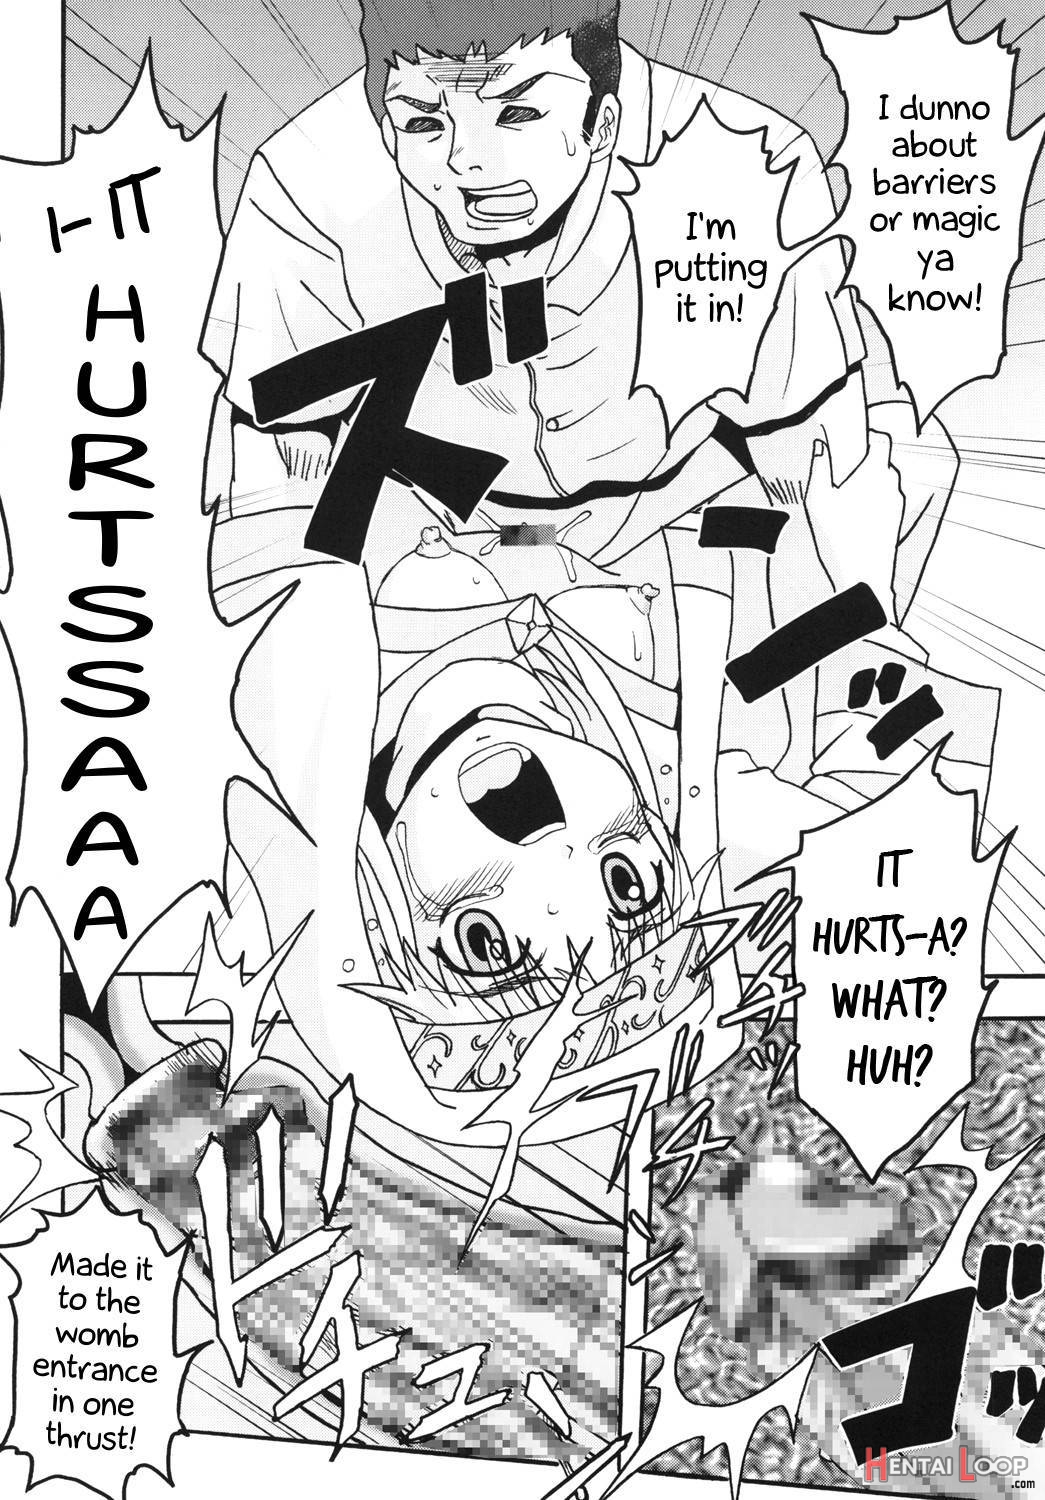 Toaru Otaku no Index #1 page 5